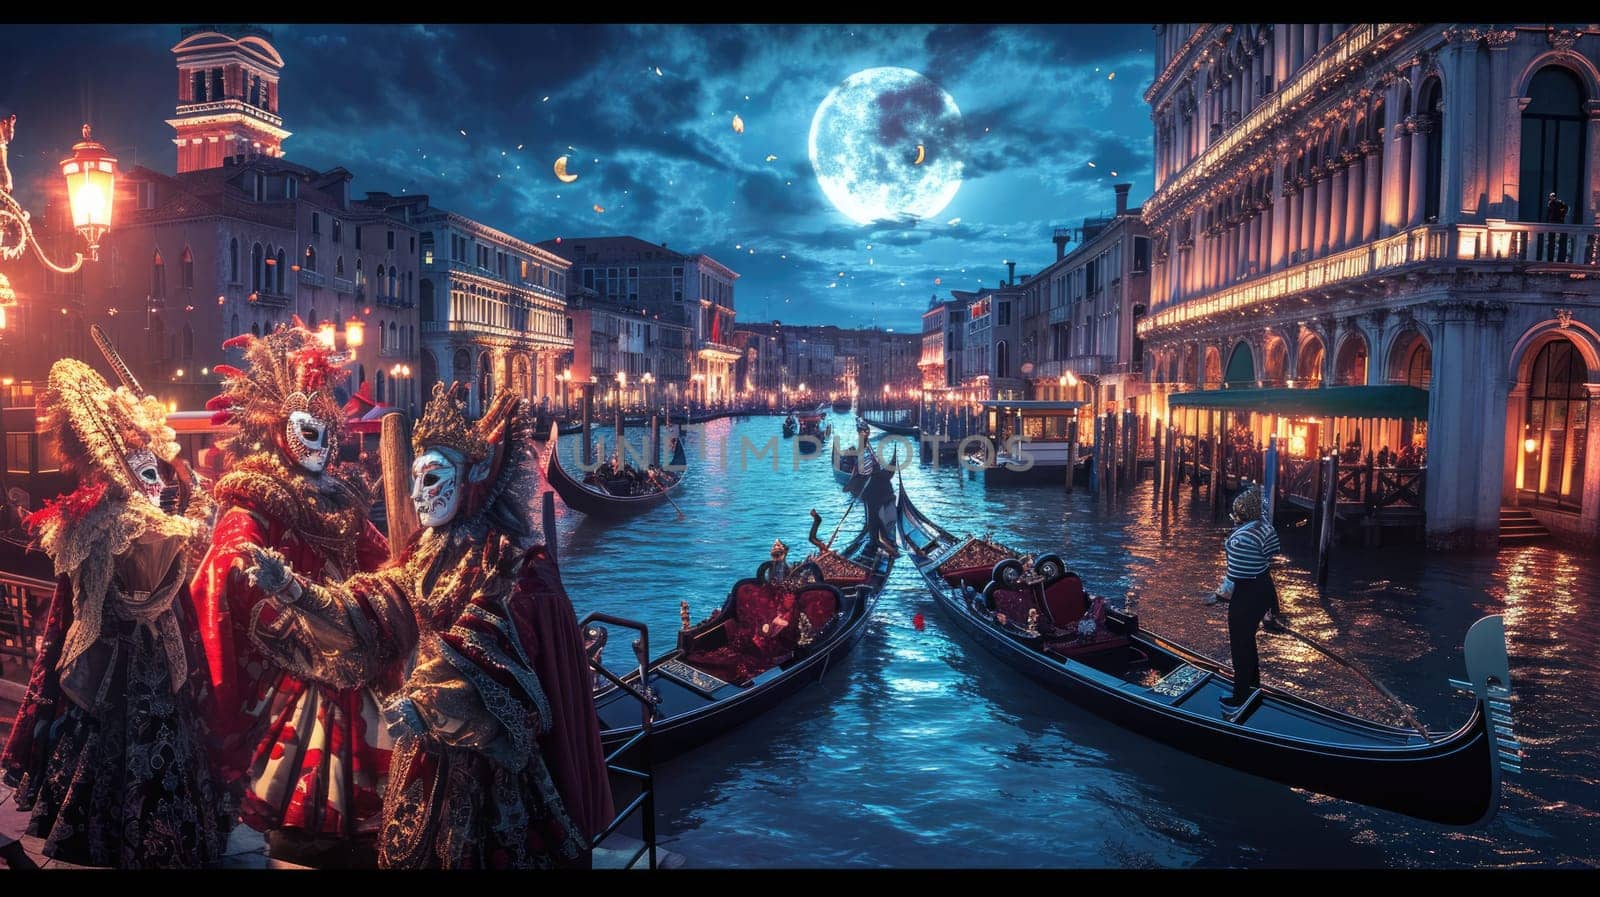 A grand Venetian carnival scene, elaborate masks. Resplendent. by biancoblue